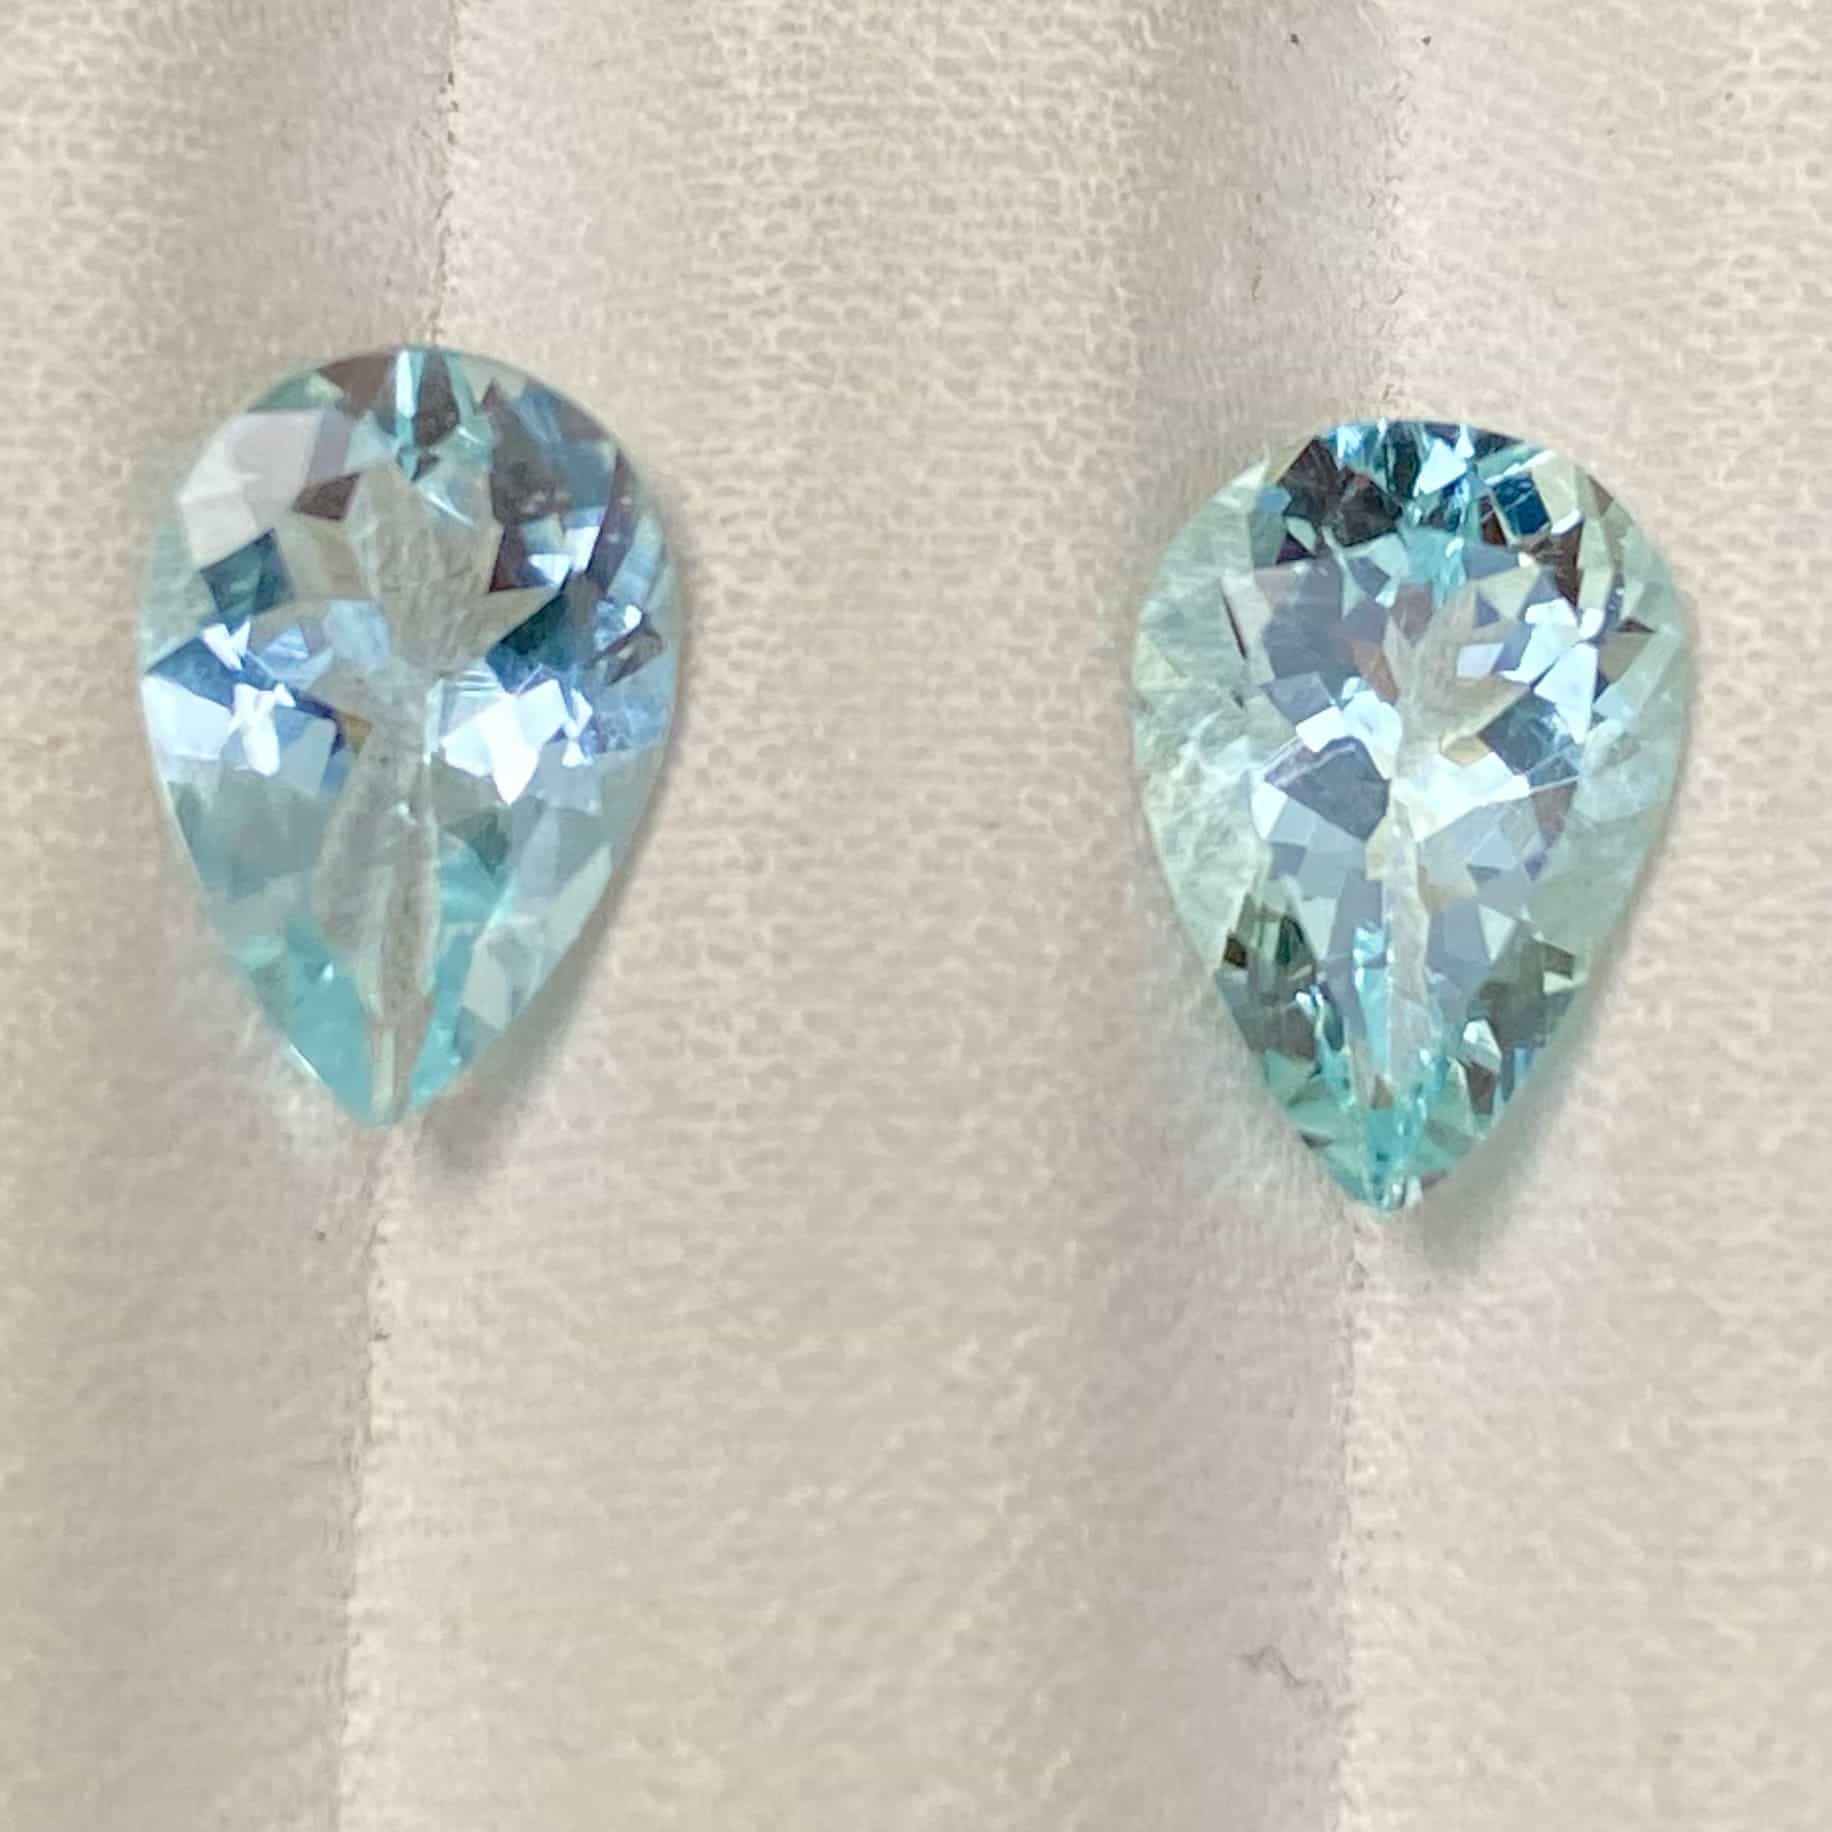 Matching Aquamarine Pair - 2.90 carat